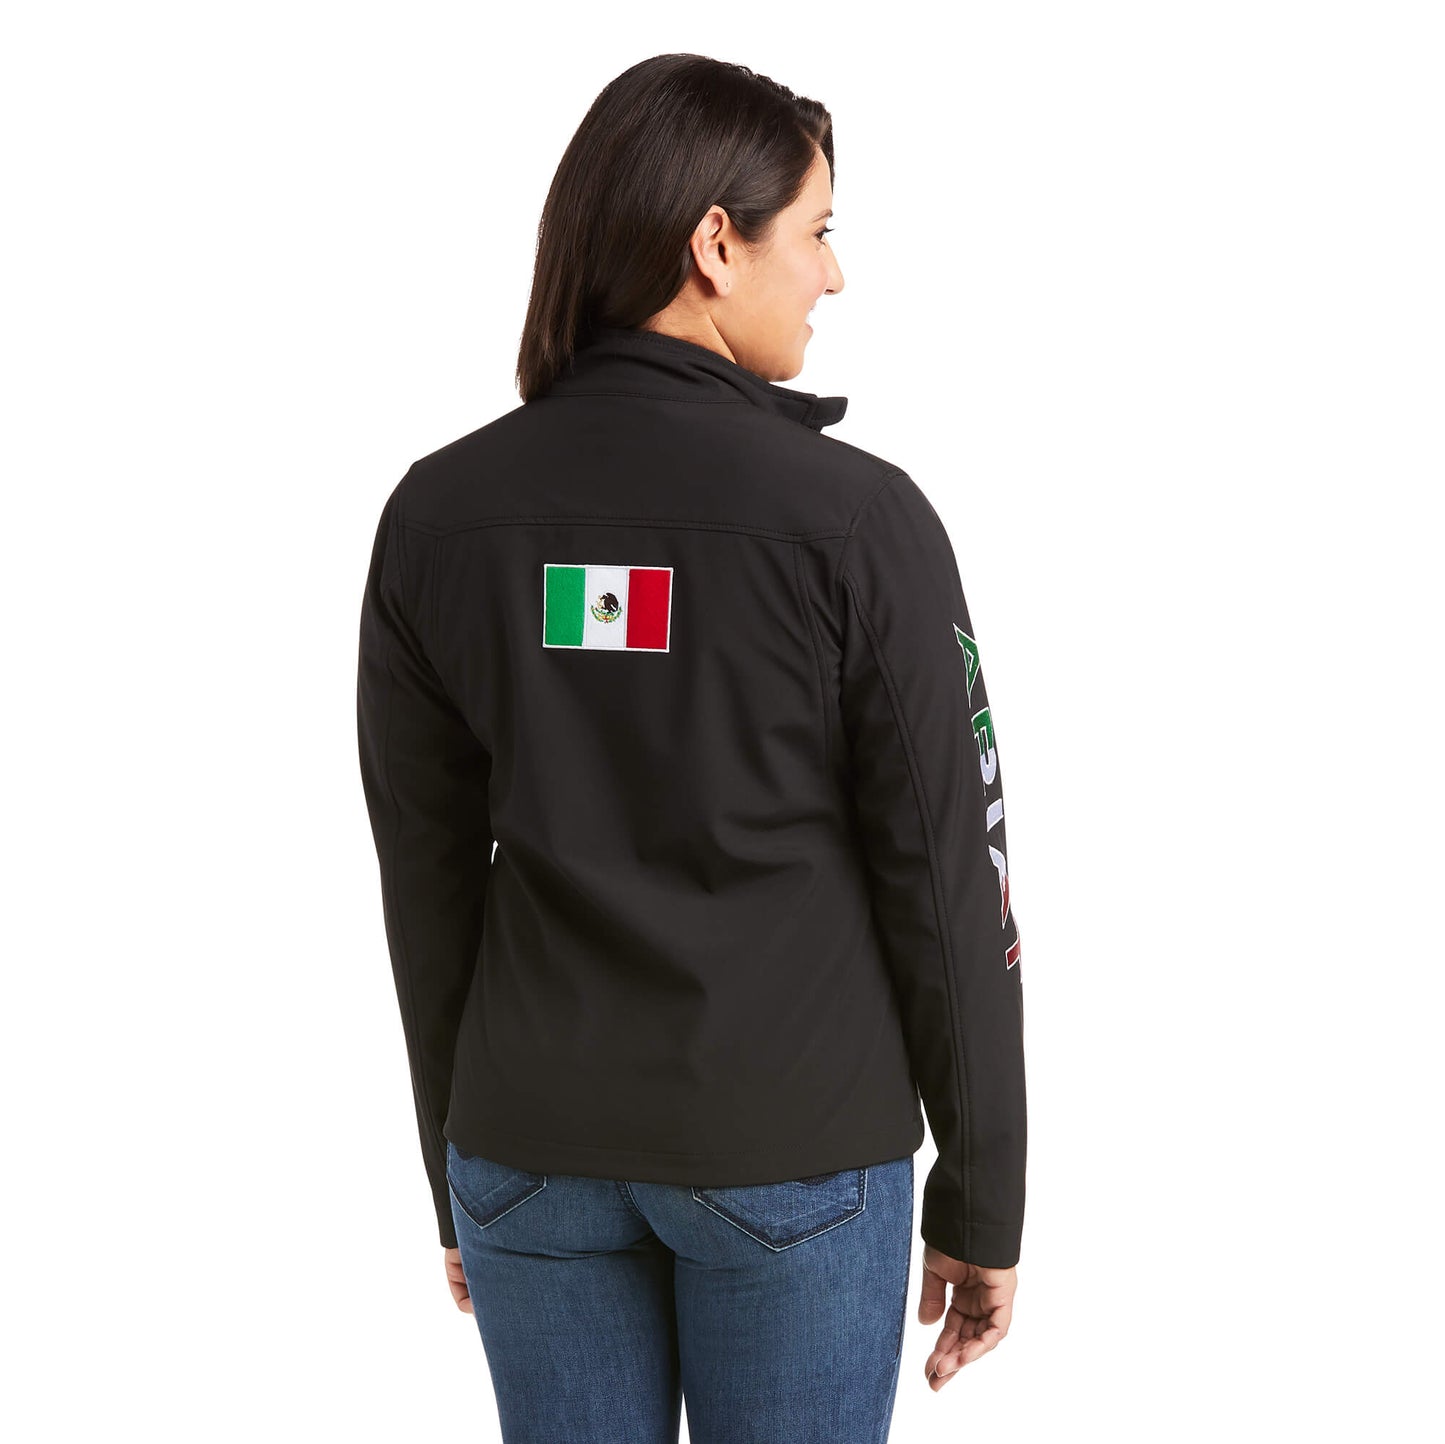 Ariat Mexico Flag Team Softshell Jacket - Black